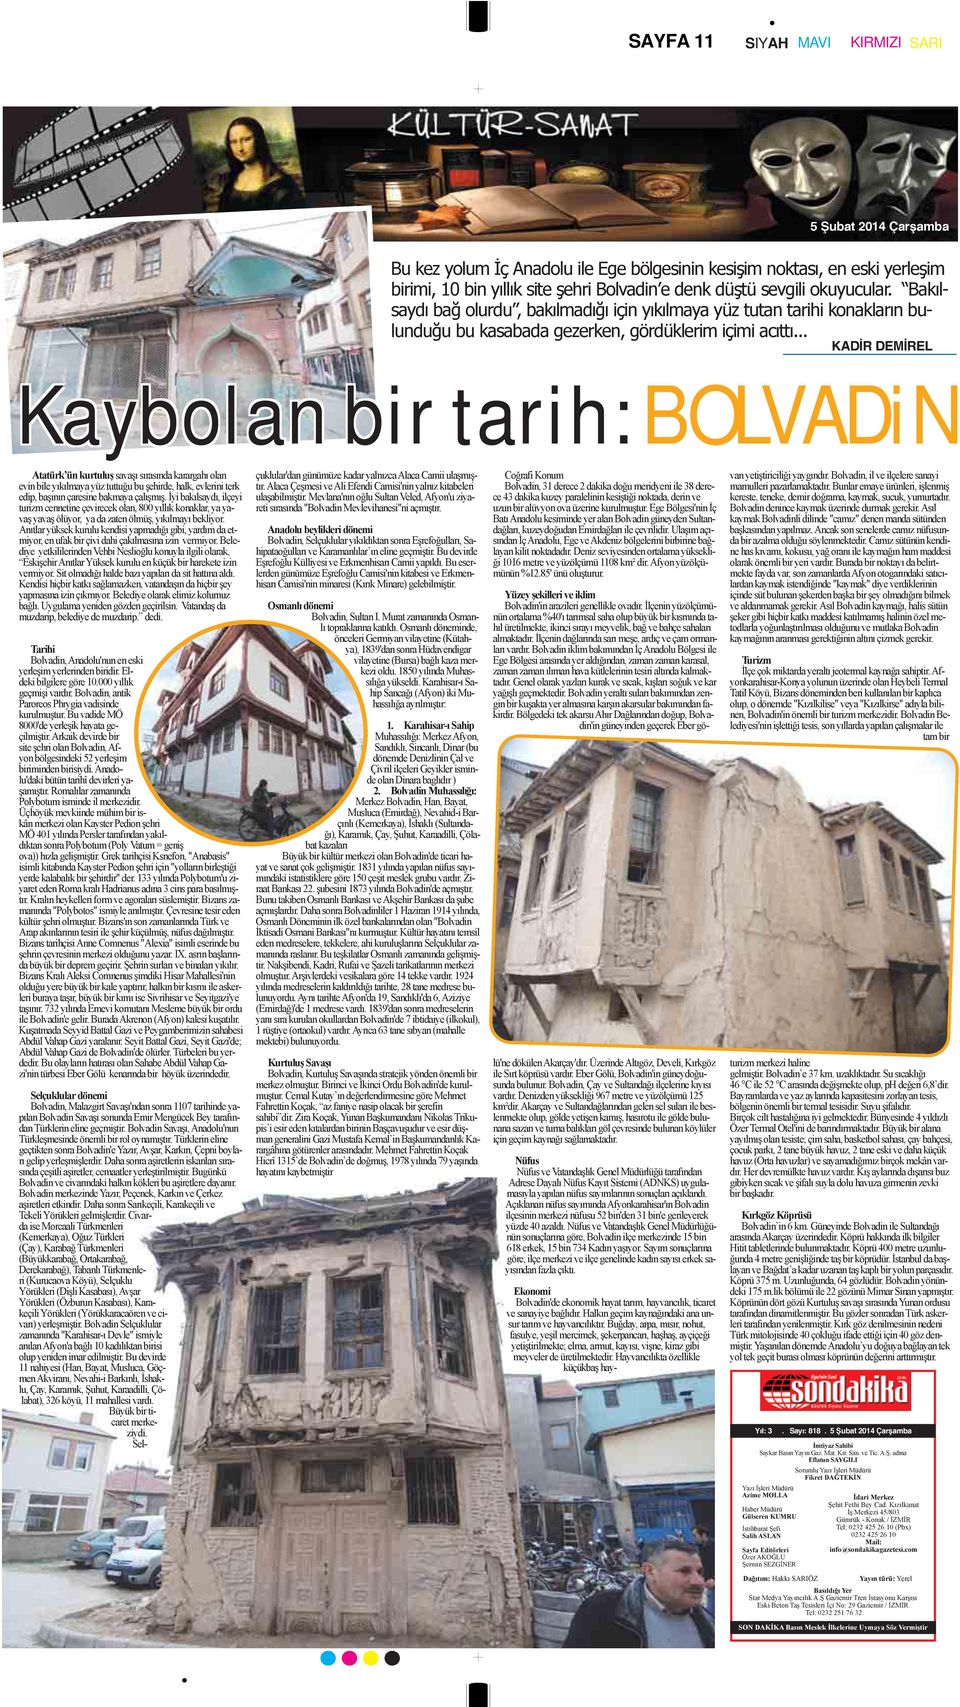 .. KADİR DEMİREL Kaybolan bir tarih: BOLVADiN Atatürk ün kurtuluş savaşı sırasında karargahı olan evin bile yıkılmaya yüz tuttuğu bu şehirde, halk, evlerini terk edip, başının çaresine bakmaya çalışmış.